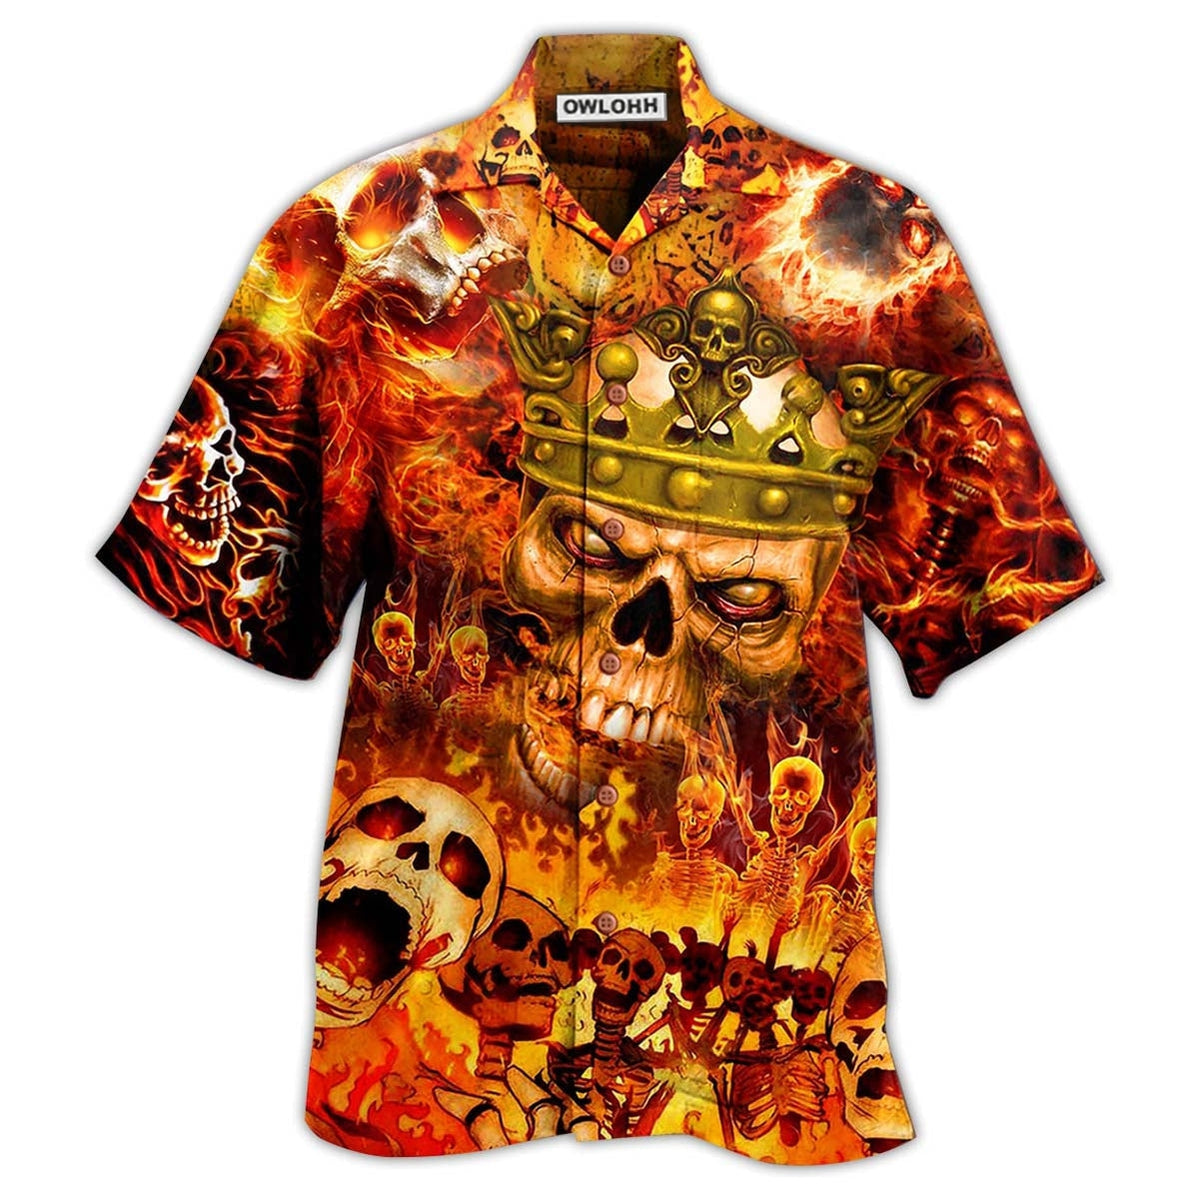 Hawaiian Shirt / Adults / S Skull King On Fire - Hawaiian Shirt - Owls Matrix LTD